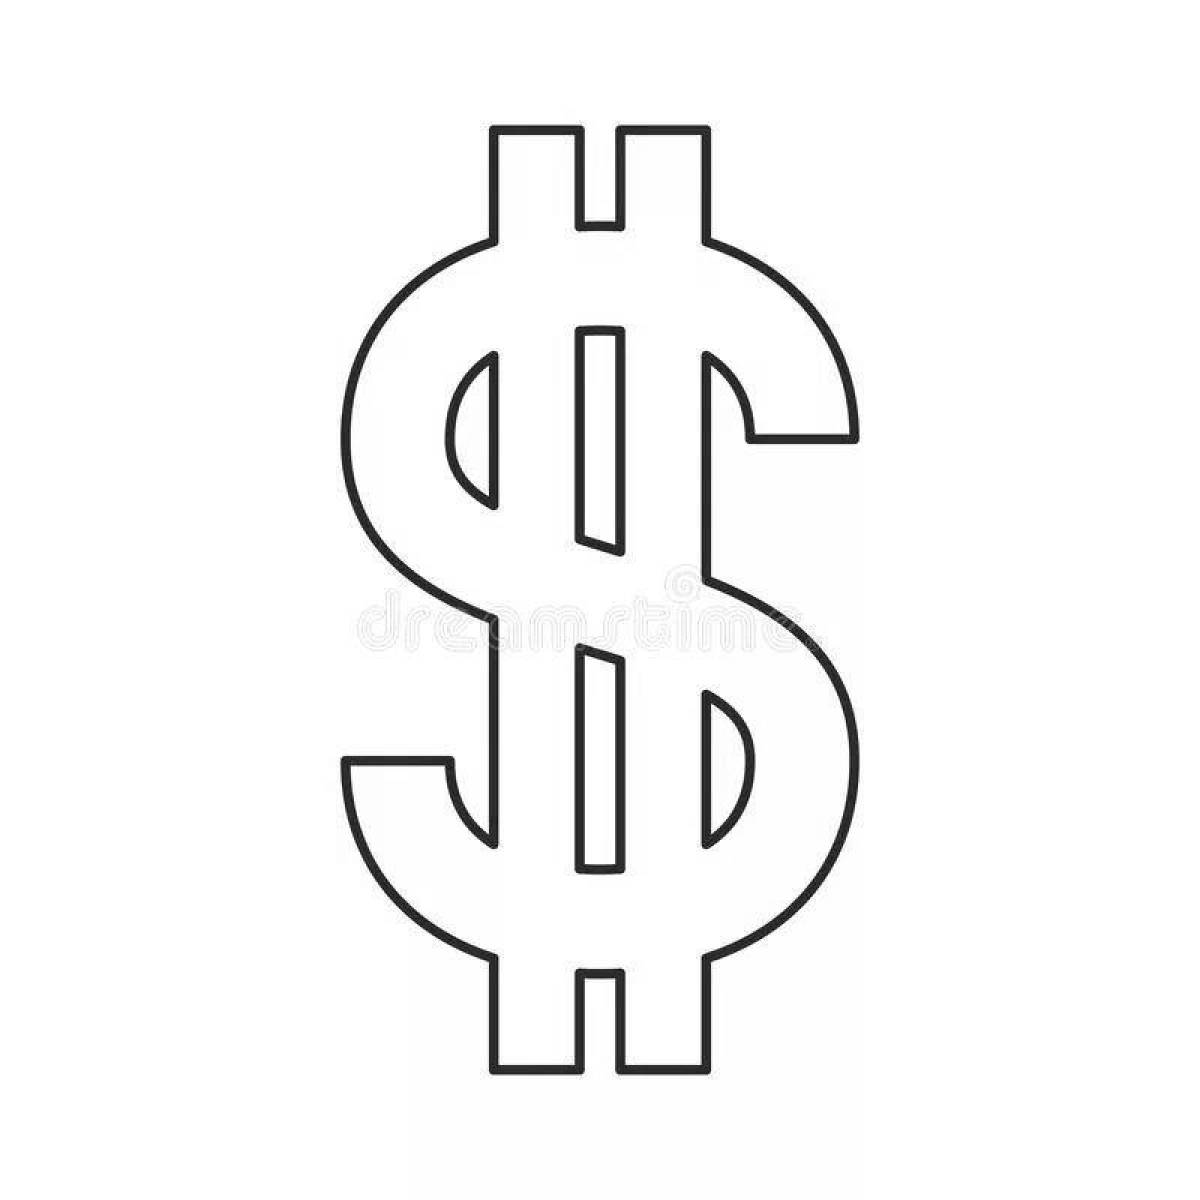 Символ доллара для распечатки